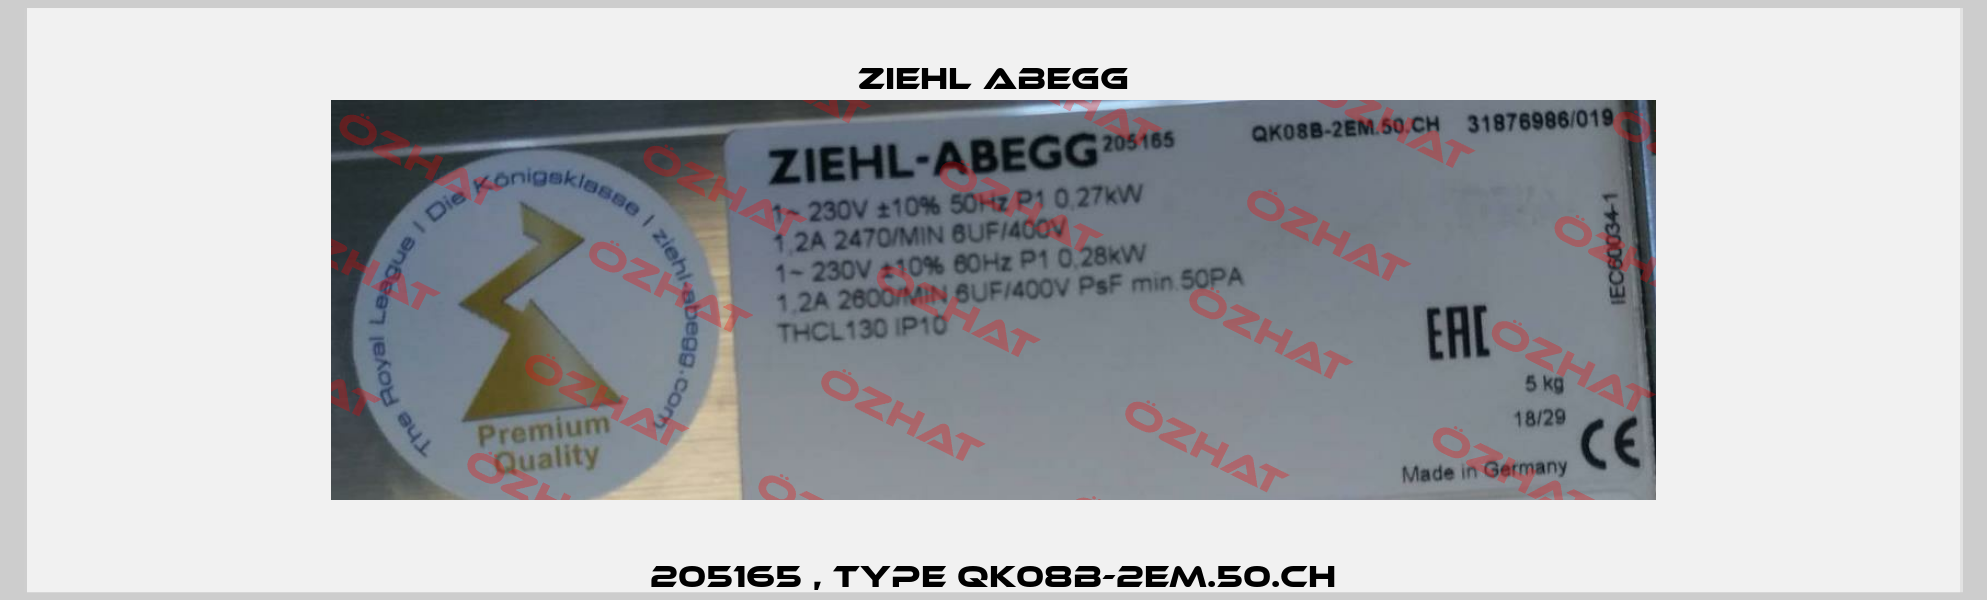 205165 , Type QK08B-2EM.50.CH Ziehl Abegg